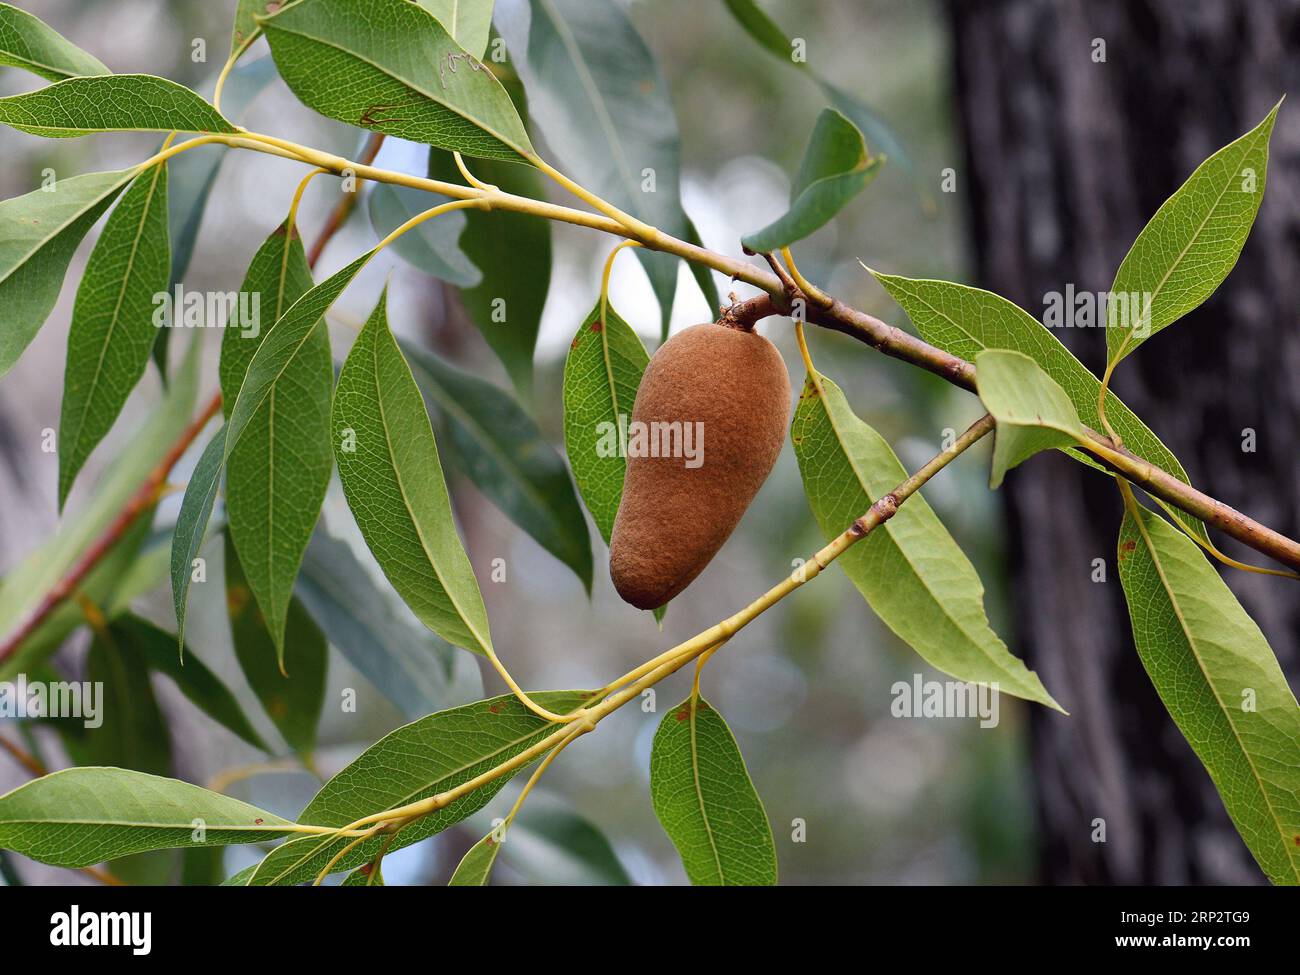 Ruggine colorata vellutata frutto in via di sviluppo della pera legnosa nativa australiana, Xylomelum pyriforme, famiglia Proteaceae, nella foresta di sclerofilla aperta di Sydney. Foto Stock